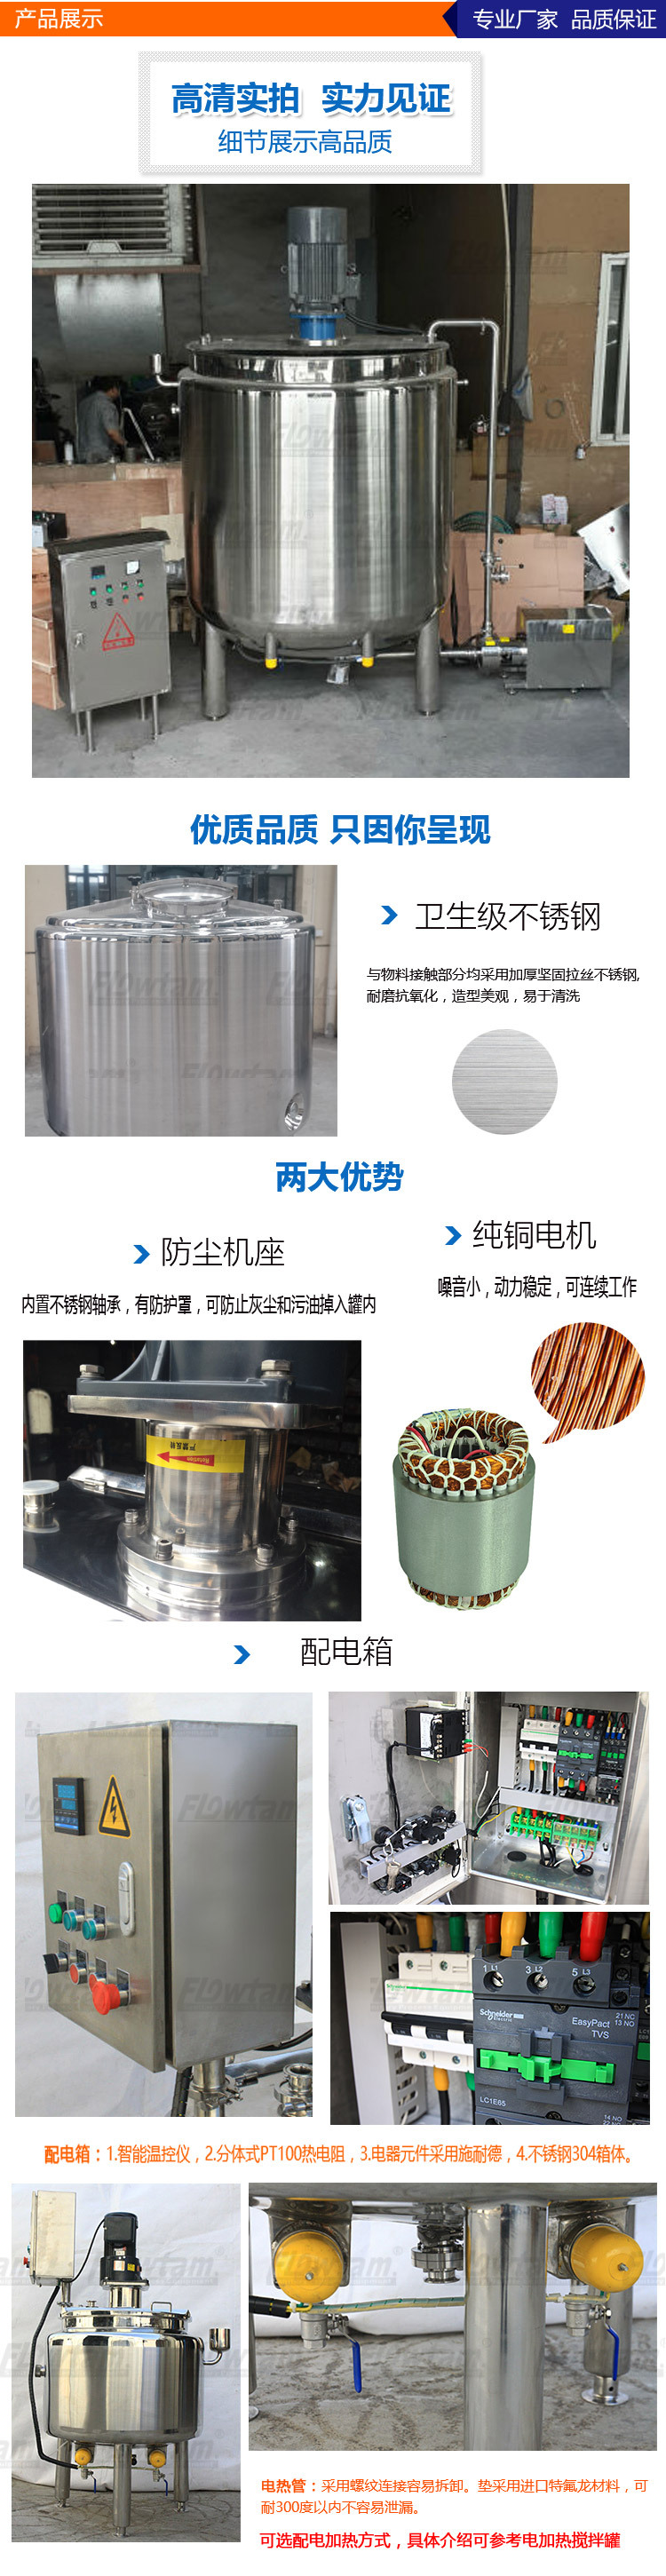 电加热循环乳化罐详细模板(1)_05